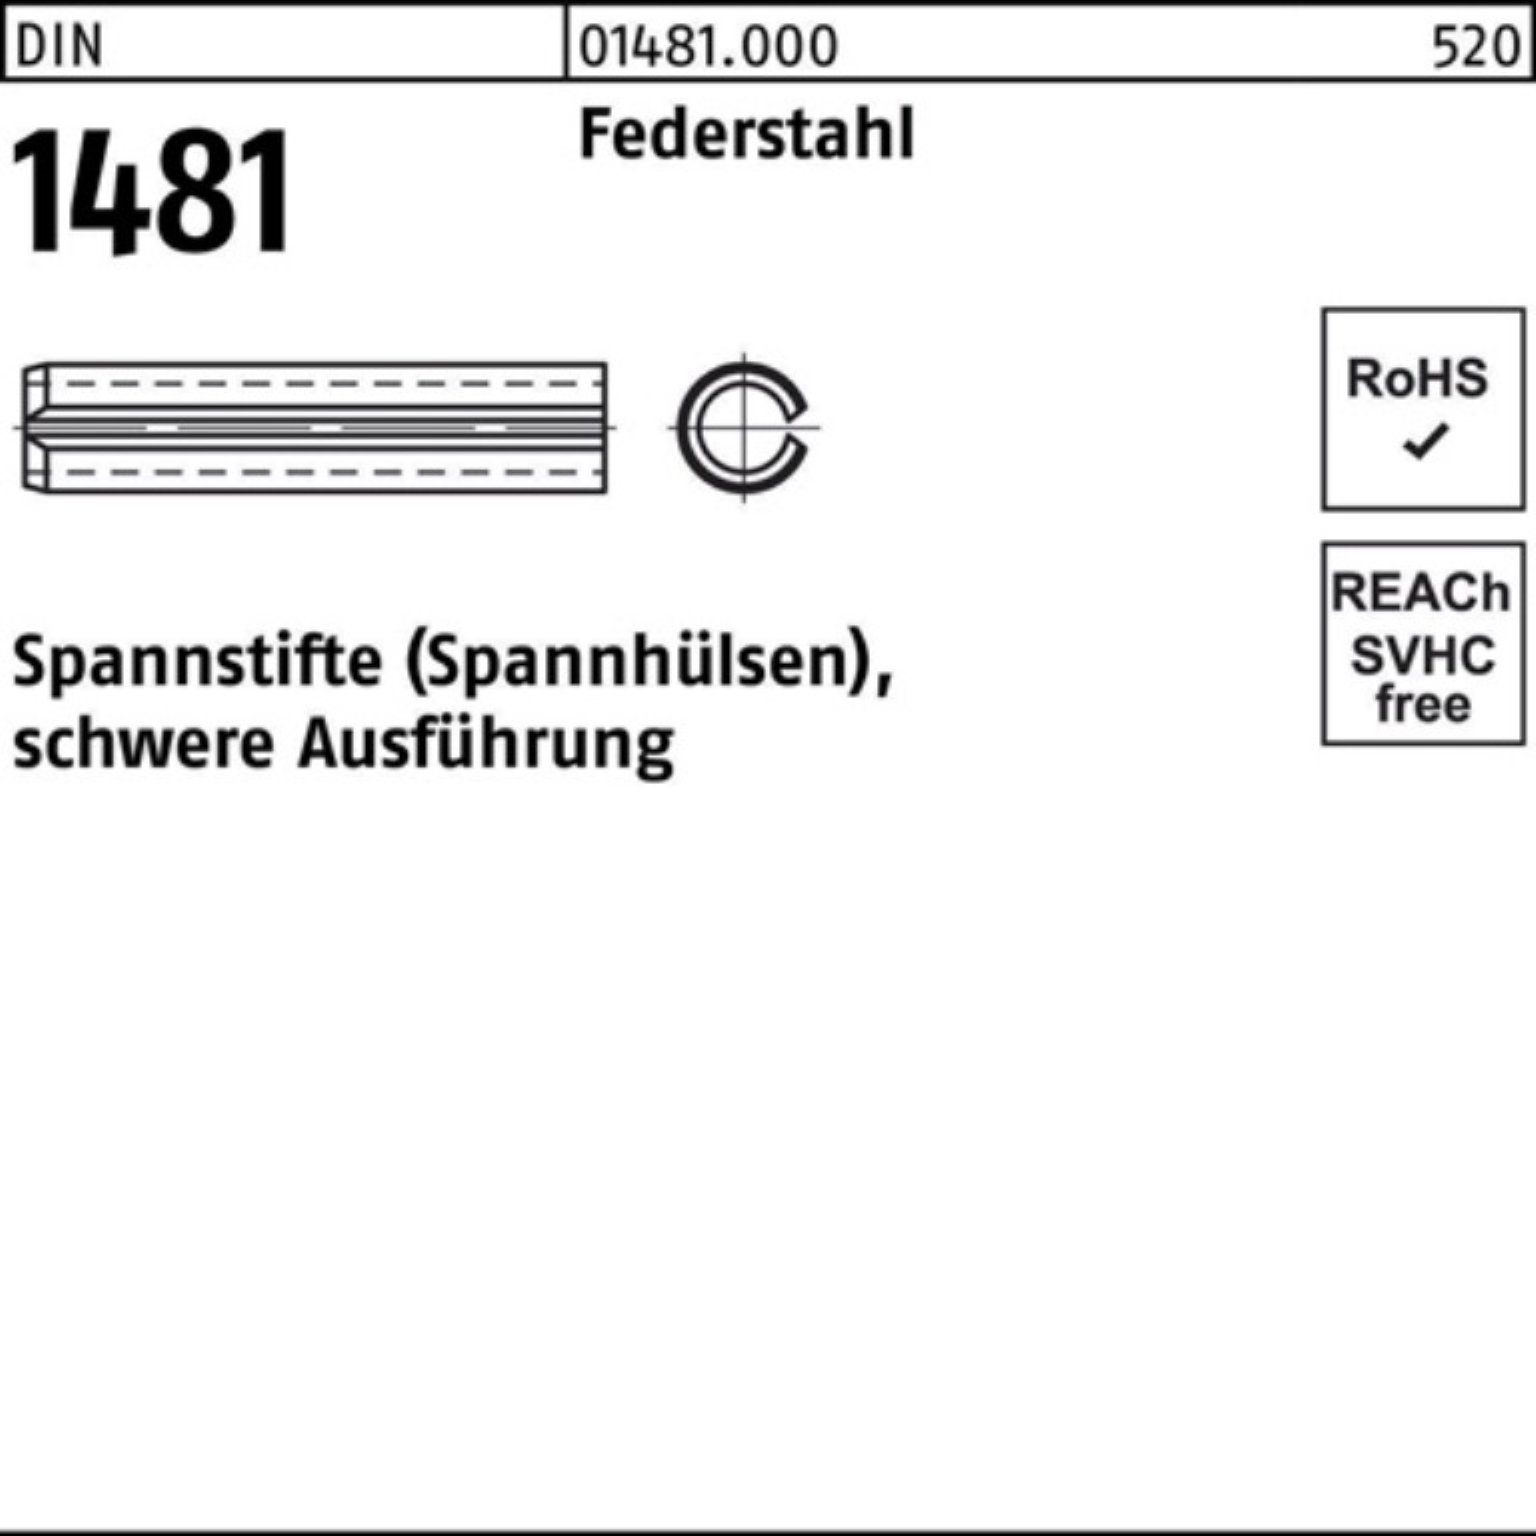 200er 6 1481 Federstahl Pack Spannstift Reyher Spannstift schwere DIN 4x 200 Ausführung